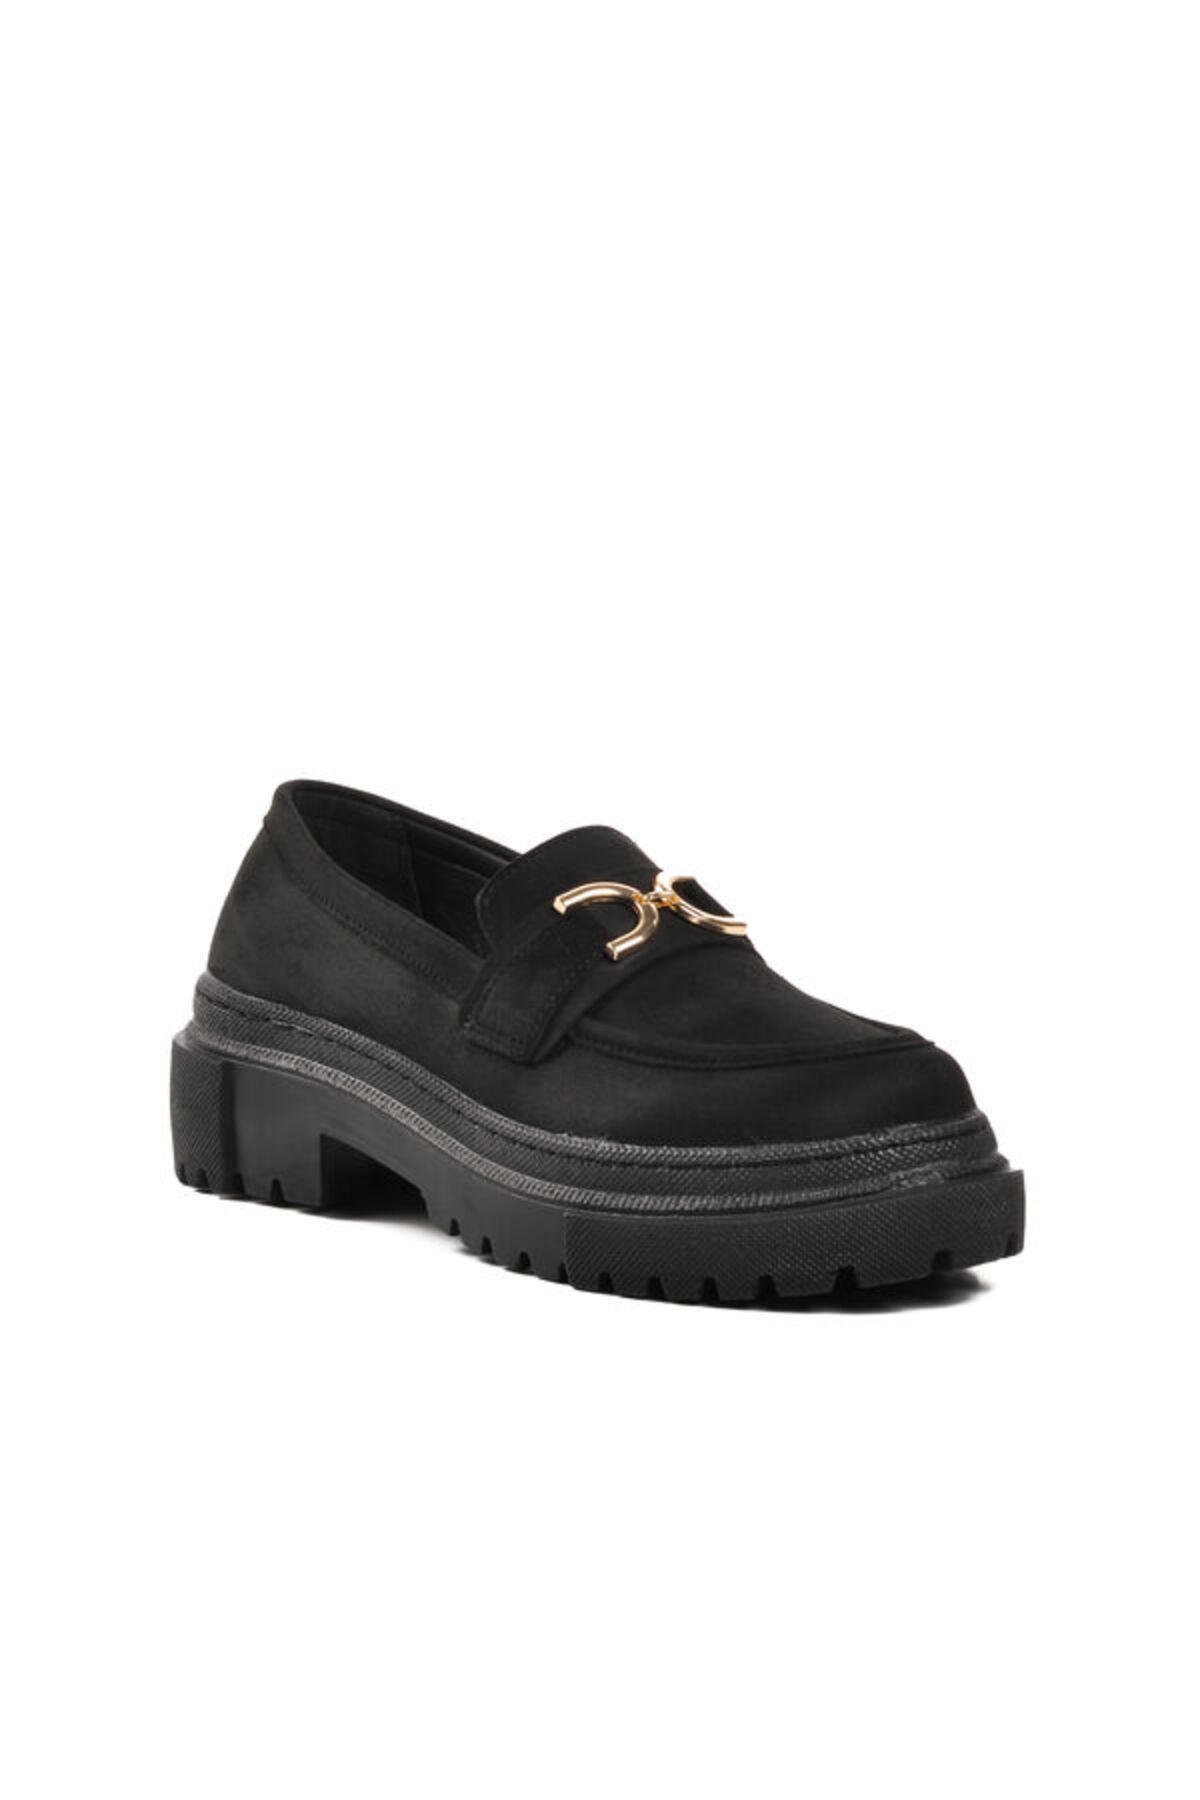 WALKWAY Siyah Süet Kadın Loafer Ayakkabı